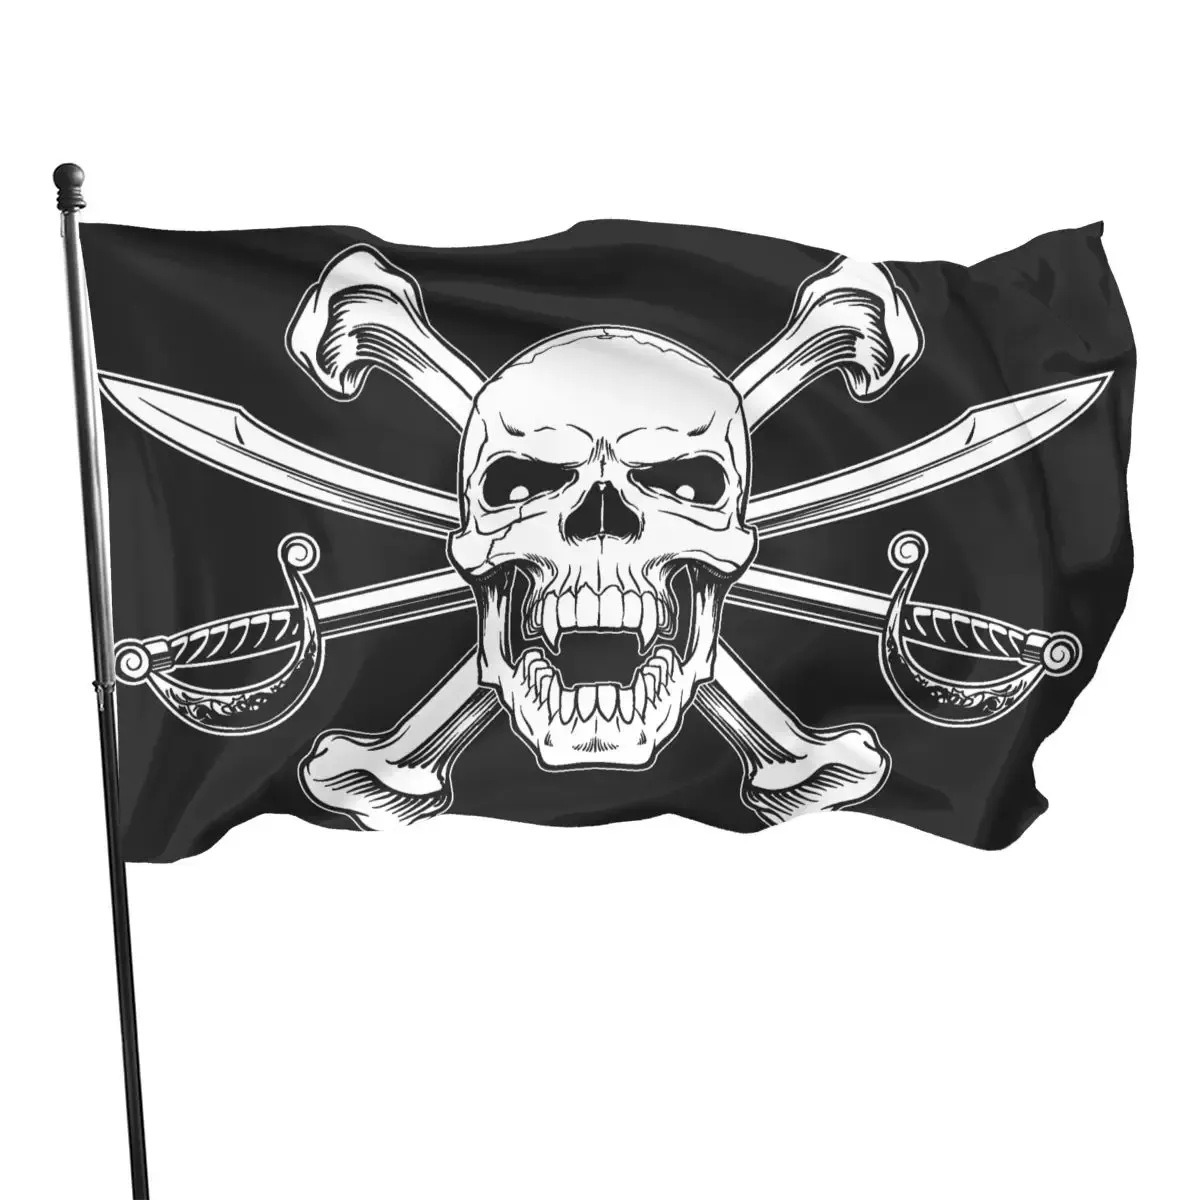 Tillbehör Pirate Cat Skull och Crossbone Flag Pirate Ship Flag Cross Knife Pirate Flags Skull Crossbones Flags Outdoor Indoor Party Decor